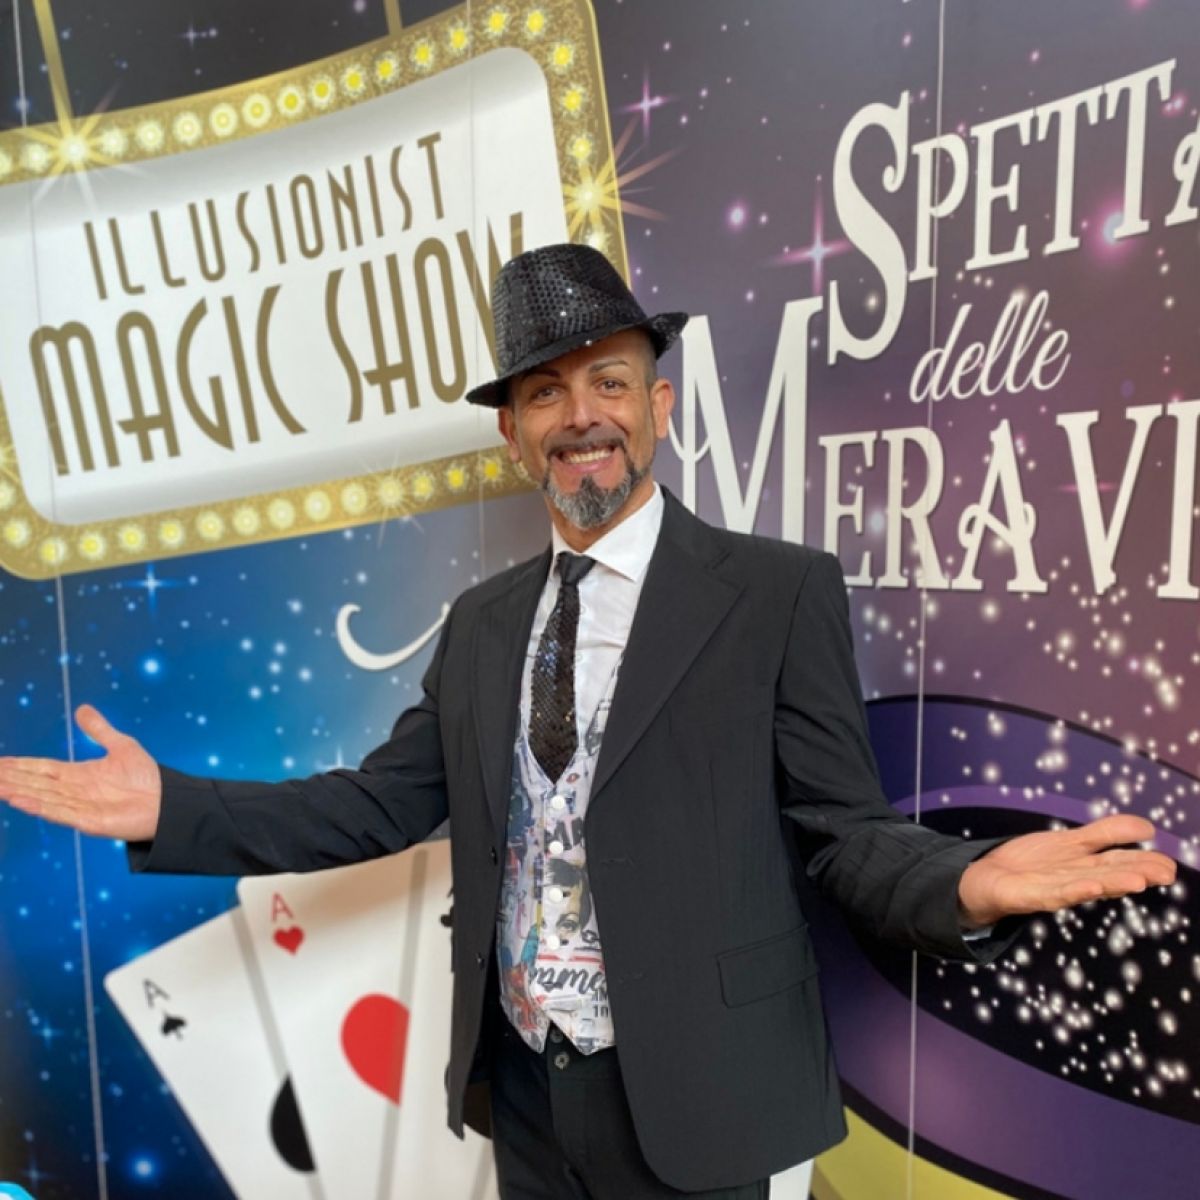 Spettacolo di magia con Mago per bambini a Monza, Milano e Bergamo